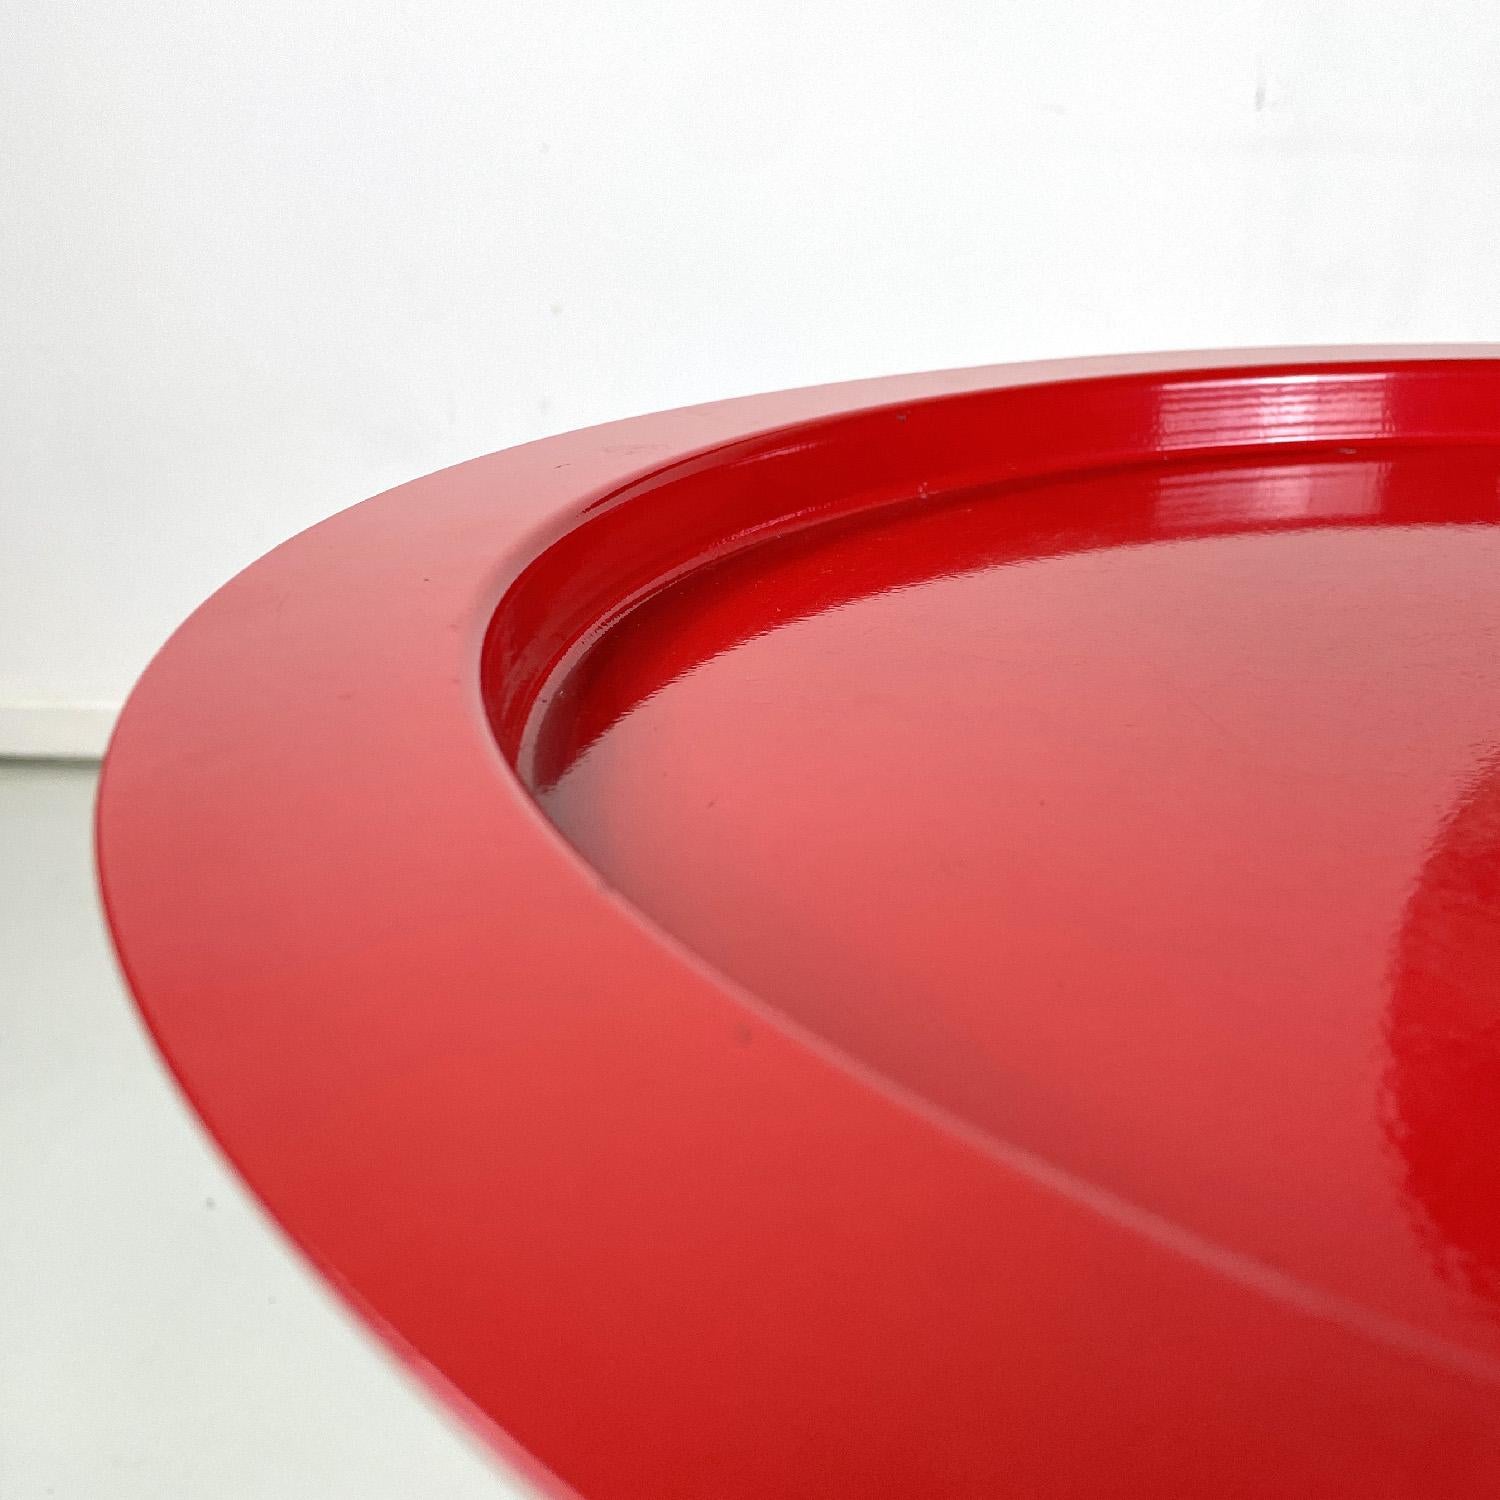 Moderner italienischer Couchtisch aus rot lackiertem Metall mit abnehmbarer Platte, 1980er Jahre  (Italienisch)